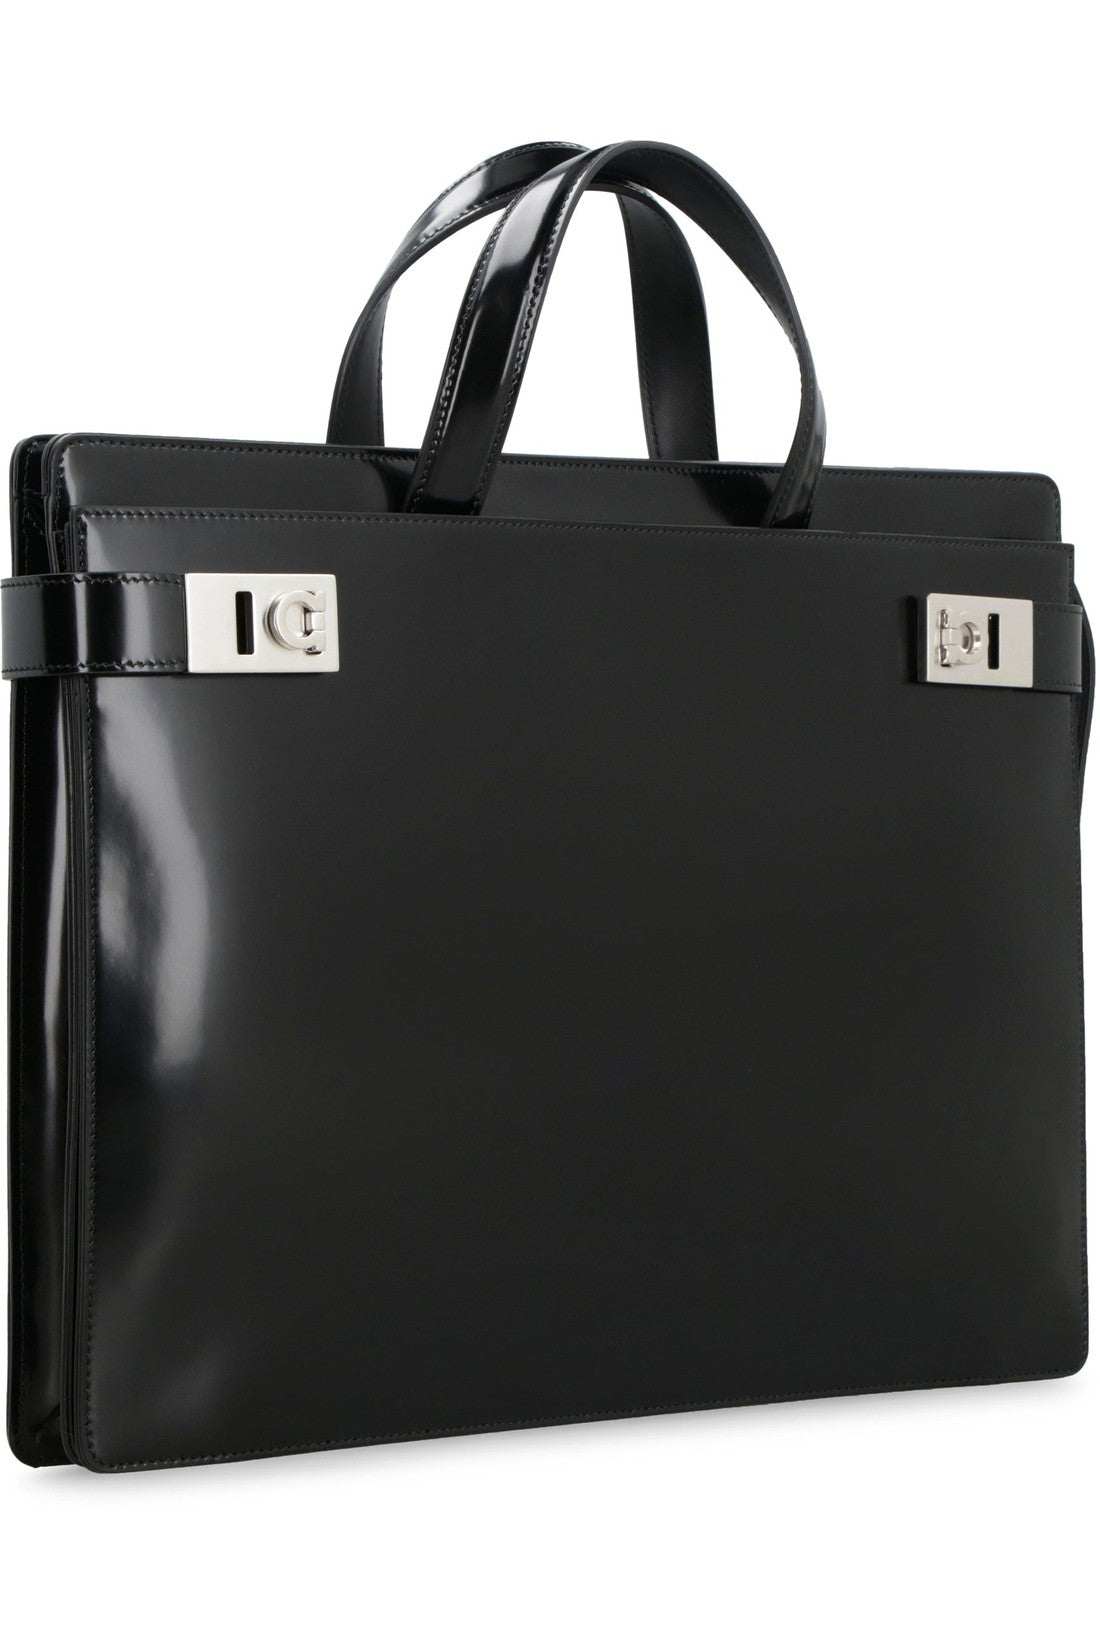 FERRAGAMO-OUTLET-SALE-Leather briefcase-ARCHIVIST